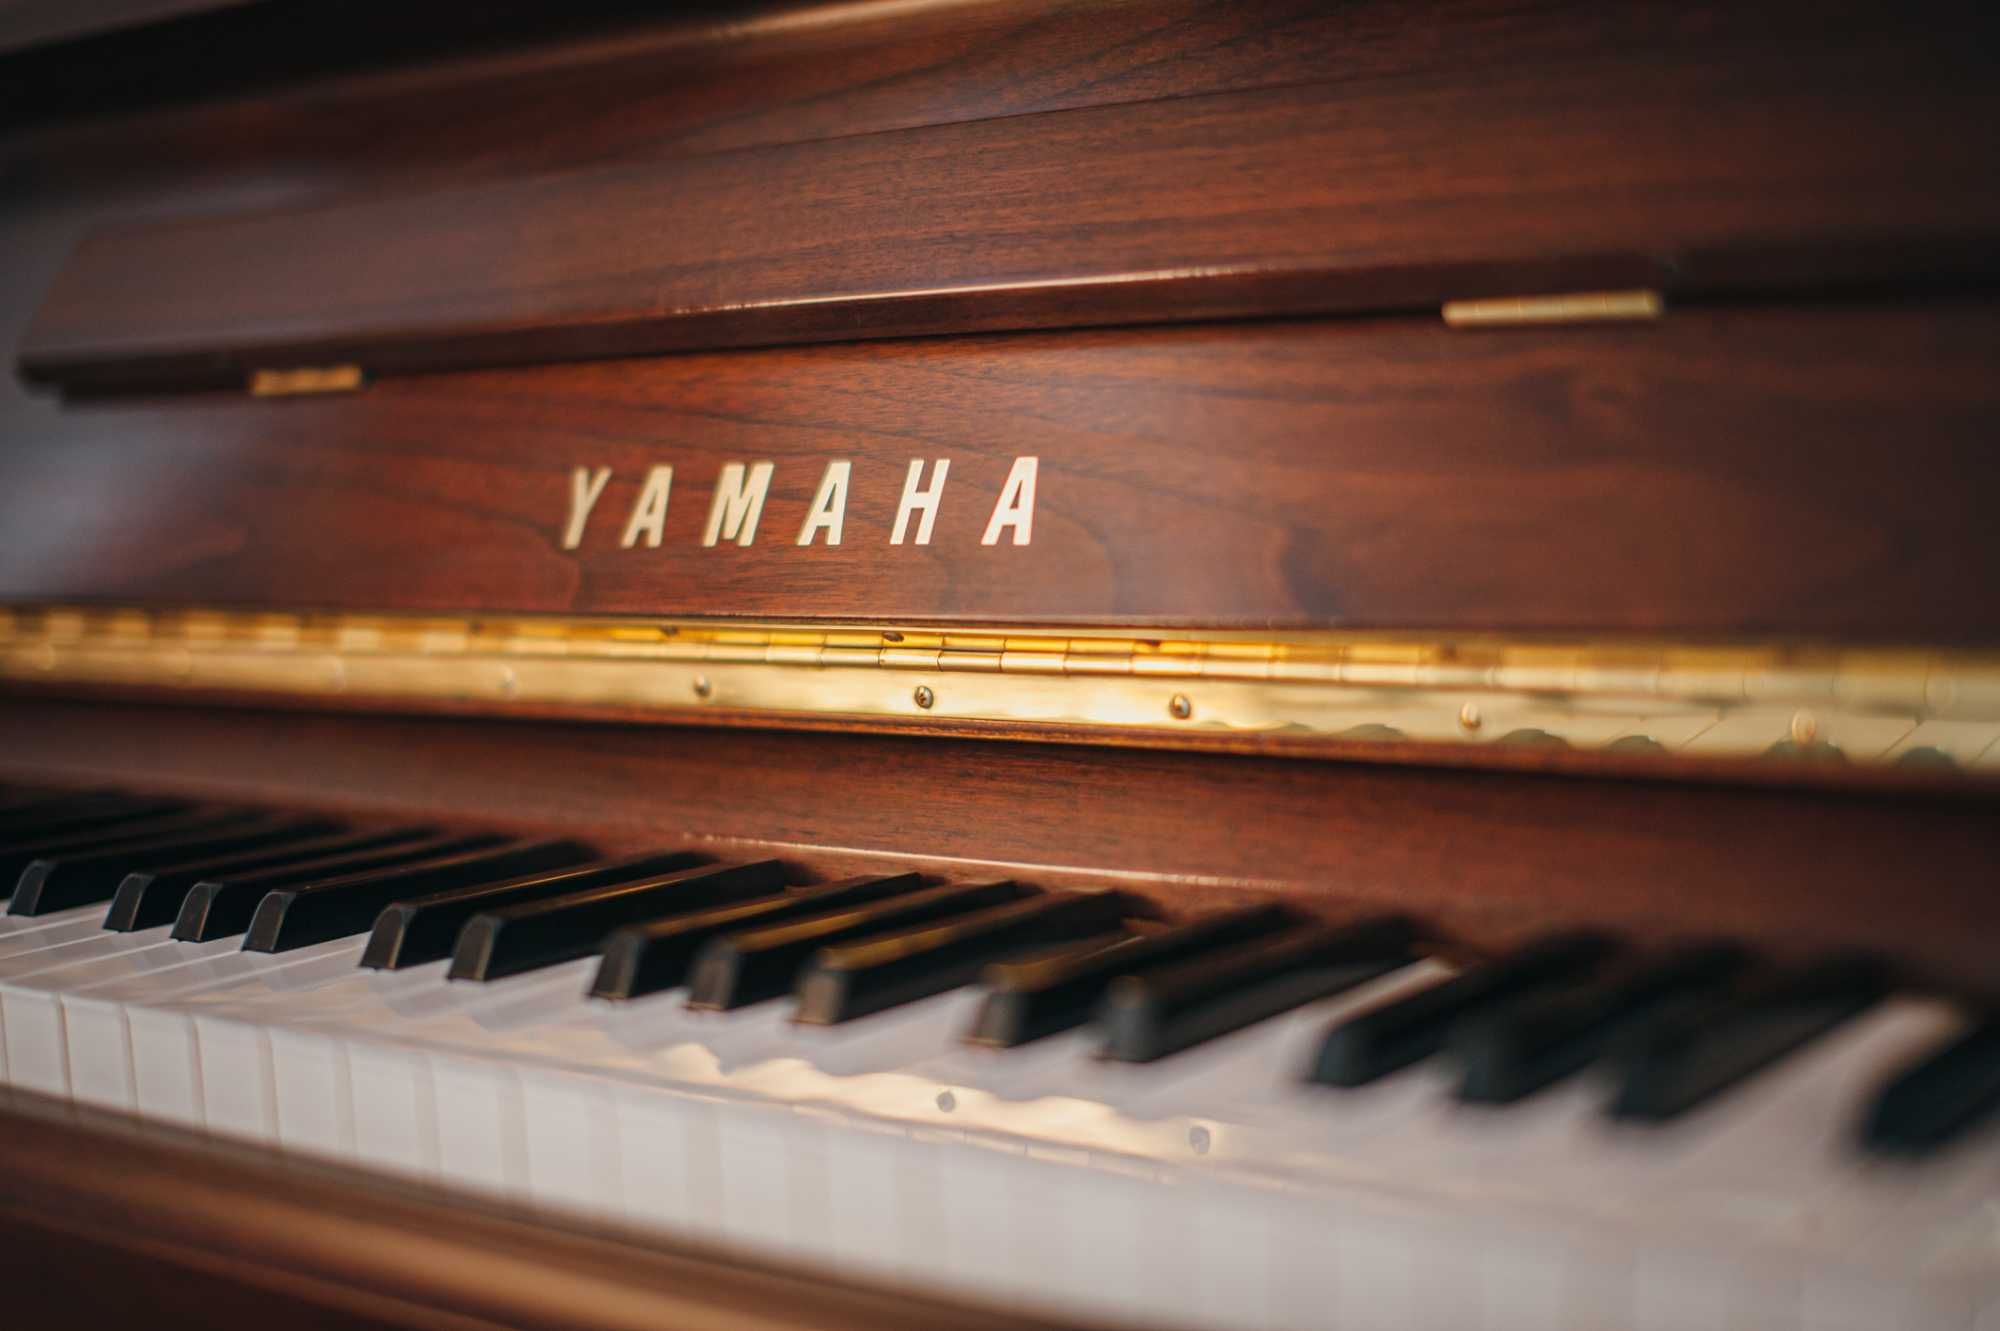 Pianino z niewidzialnym pianistą! - Yamaha MX300MR